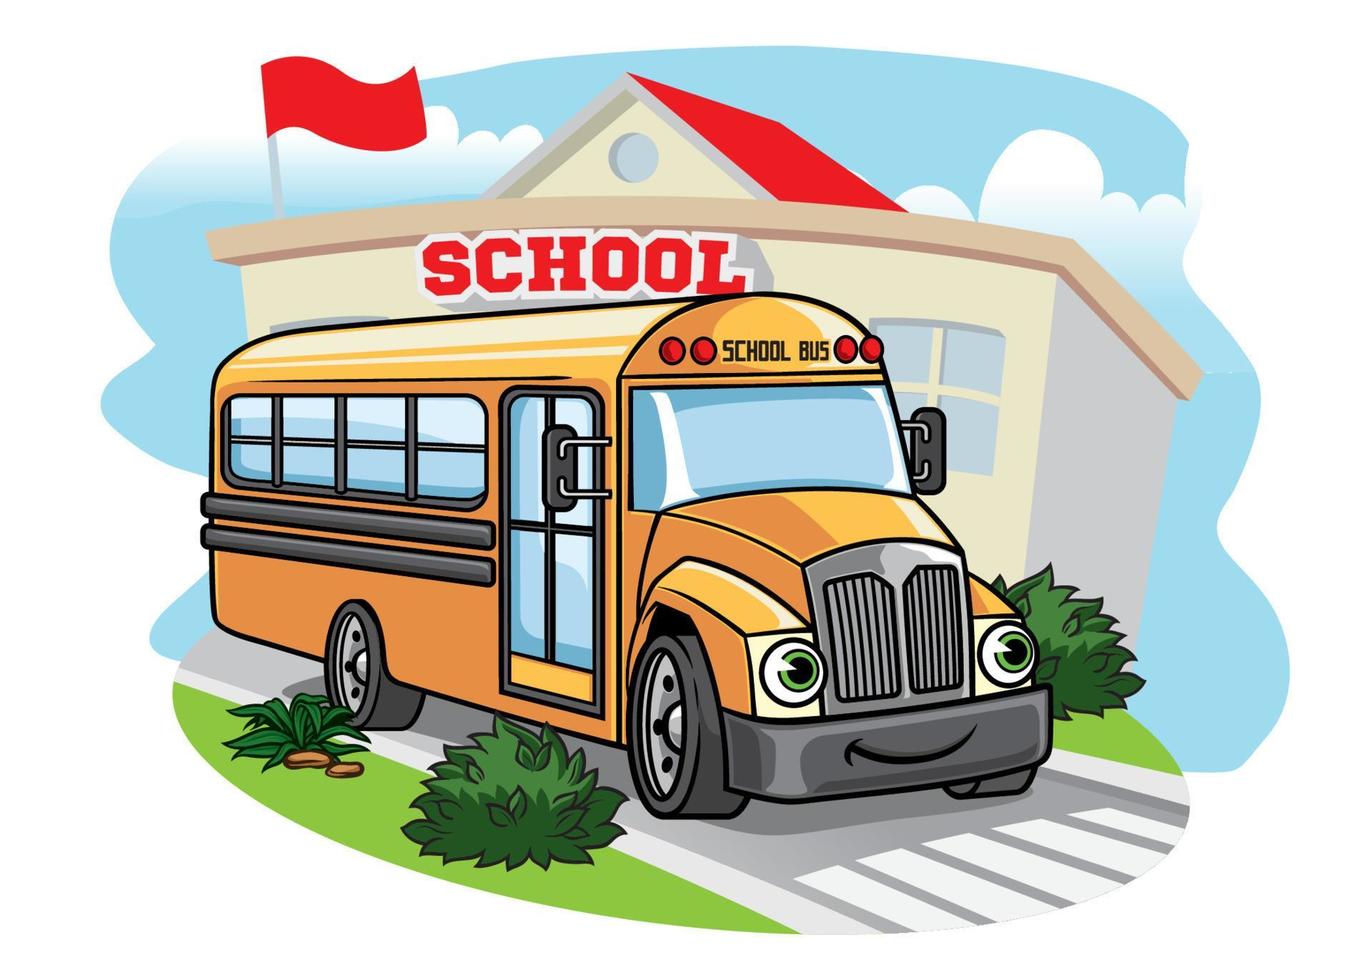 cartoon School Bus illustration at the school vector